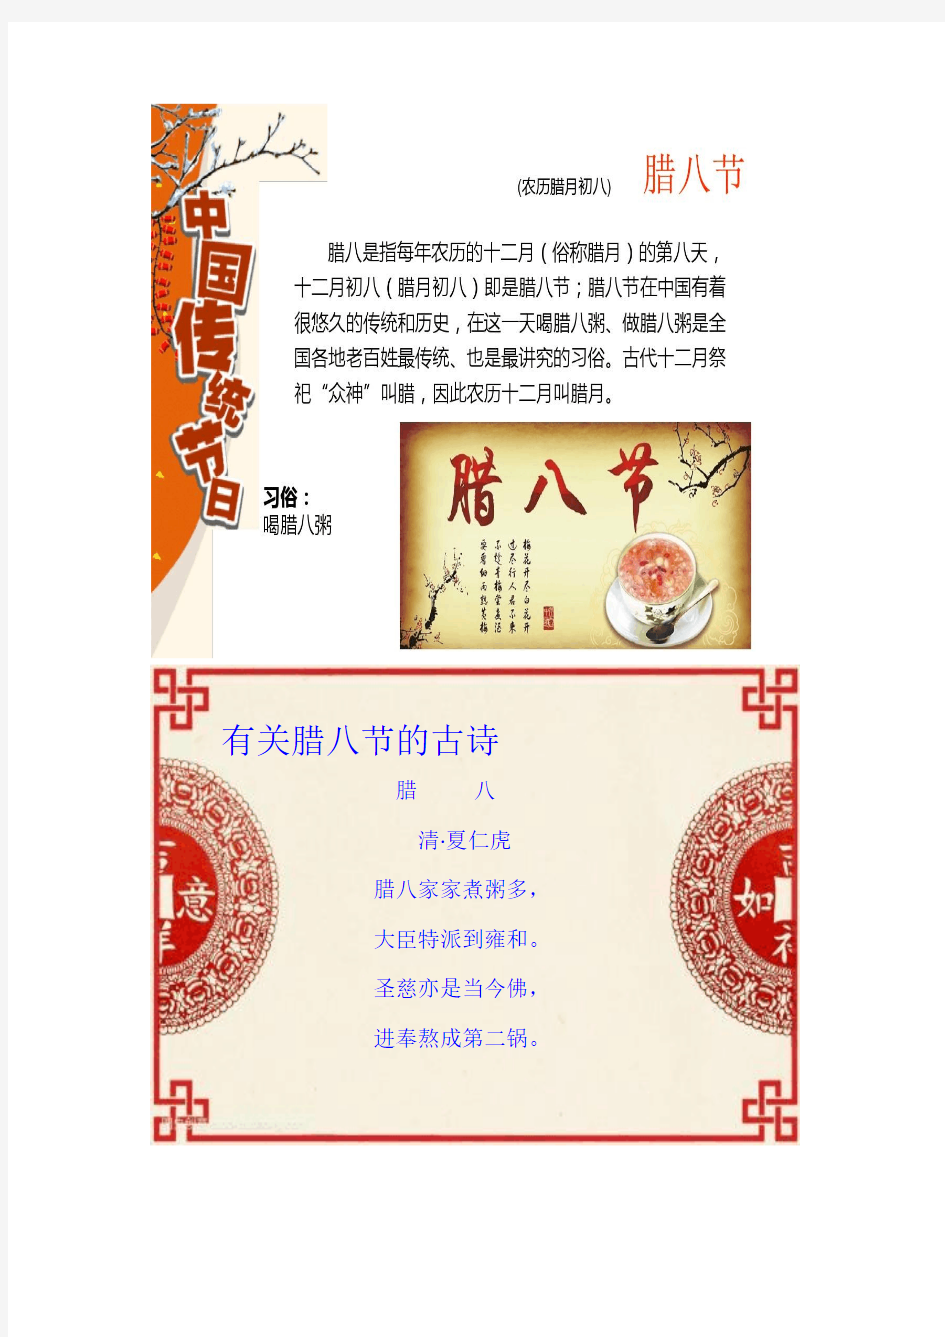 中国传统节日(用于板报)